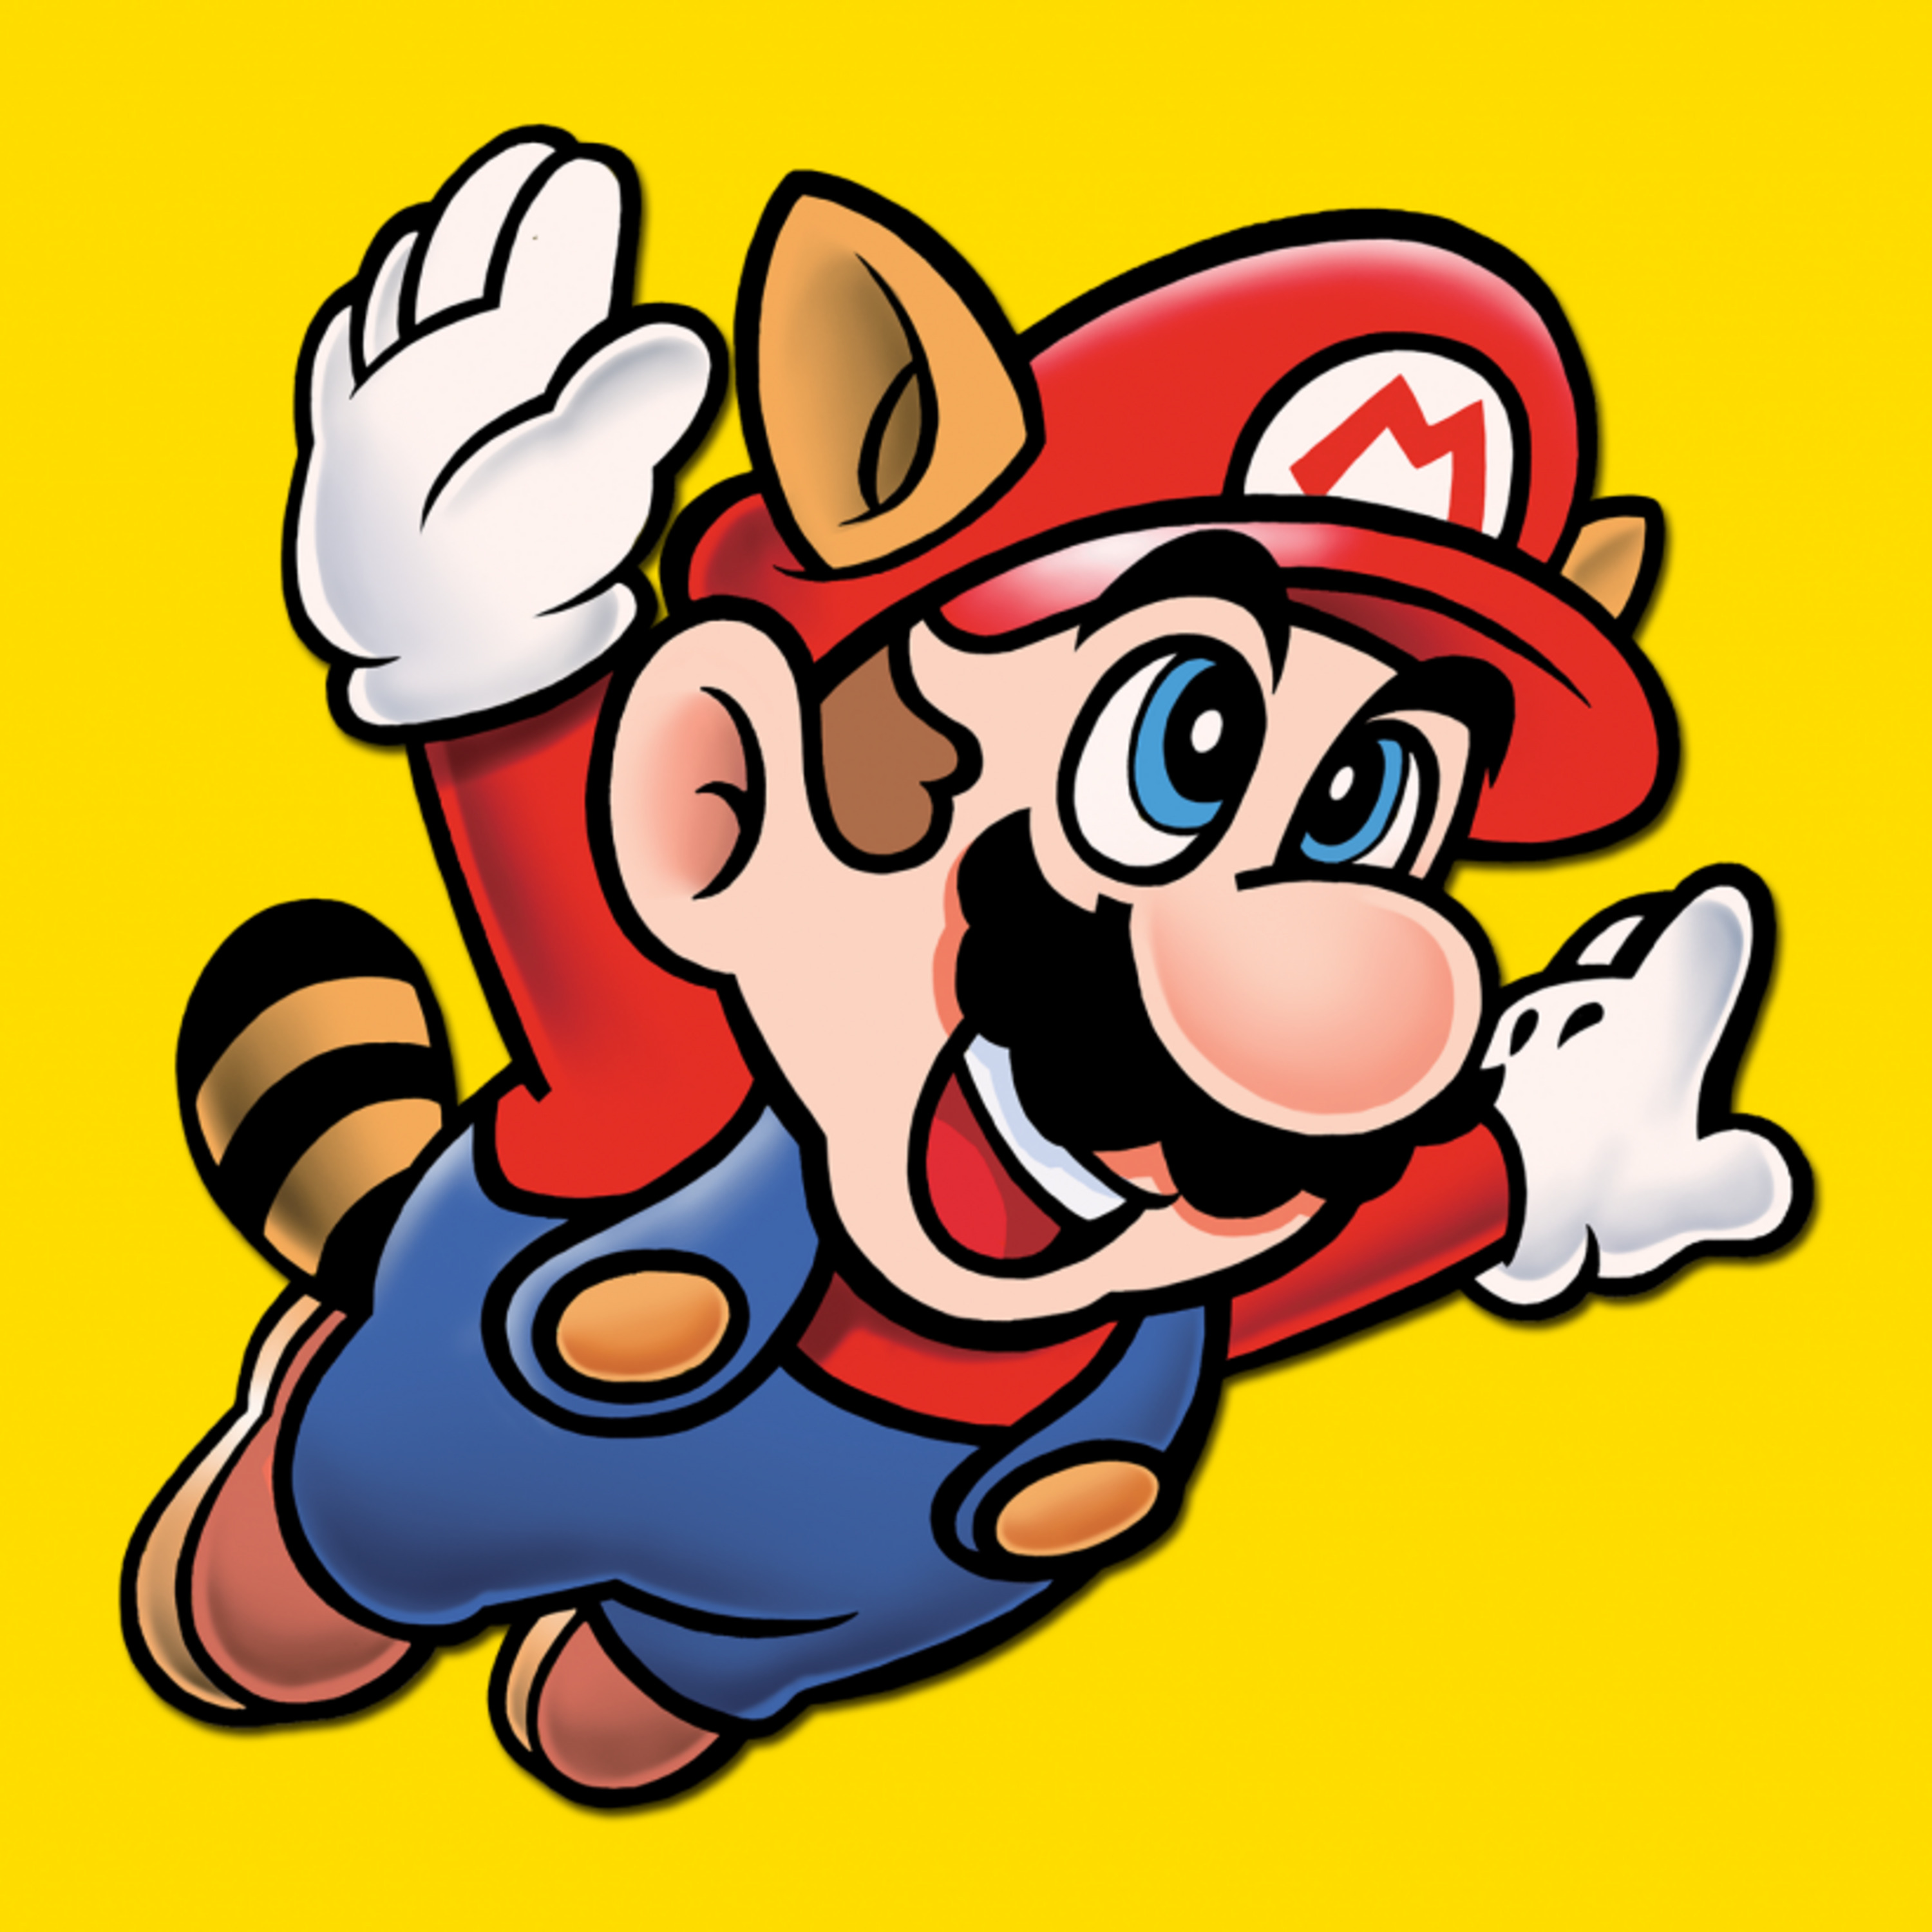 342: Super Mario Bros. 3